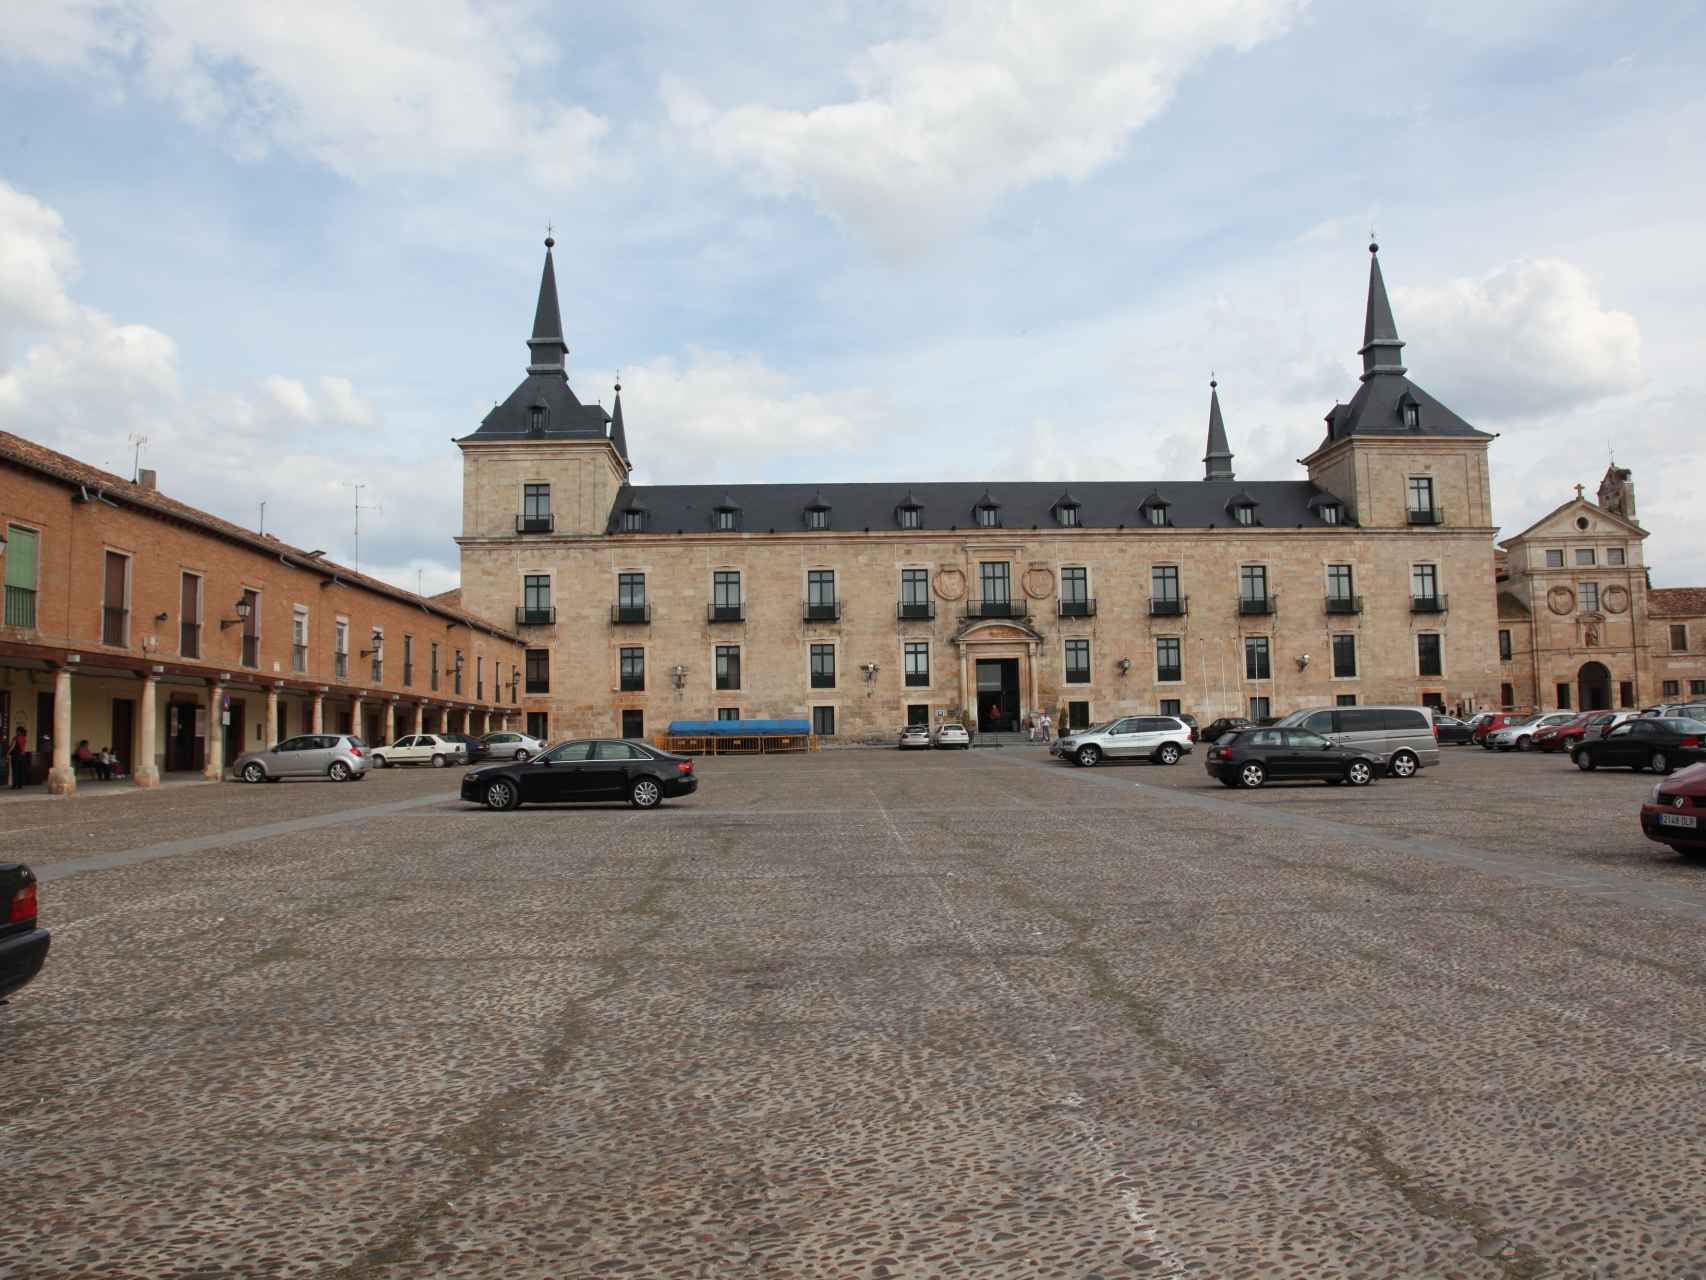 Palacio ducal de Lerma (Burgos), que empezó a construirse en 1601 por encargo de Francisco de Sandoval y Rojas